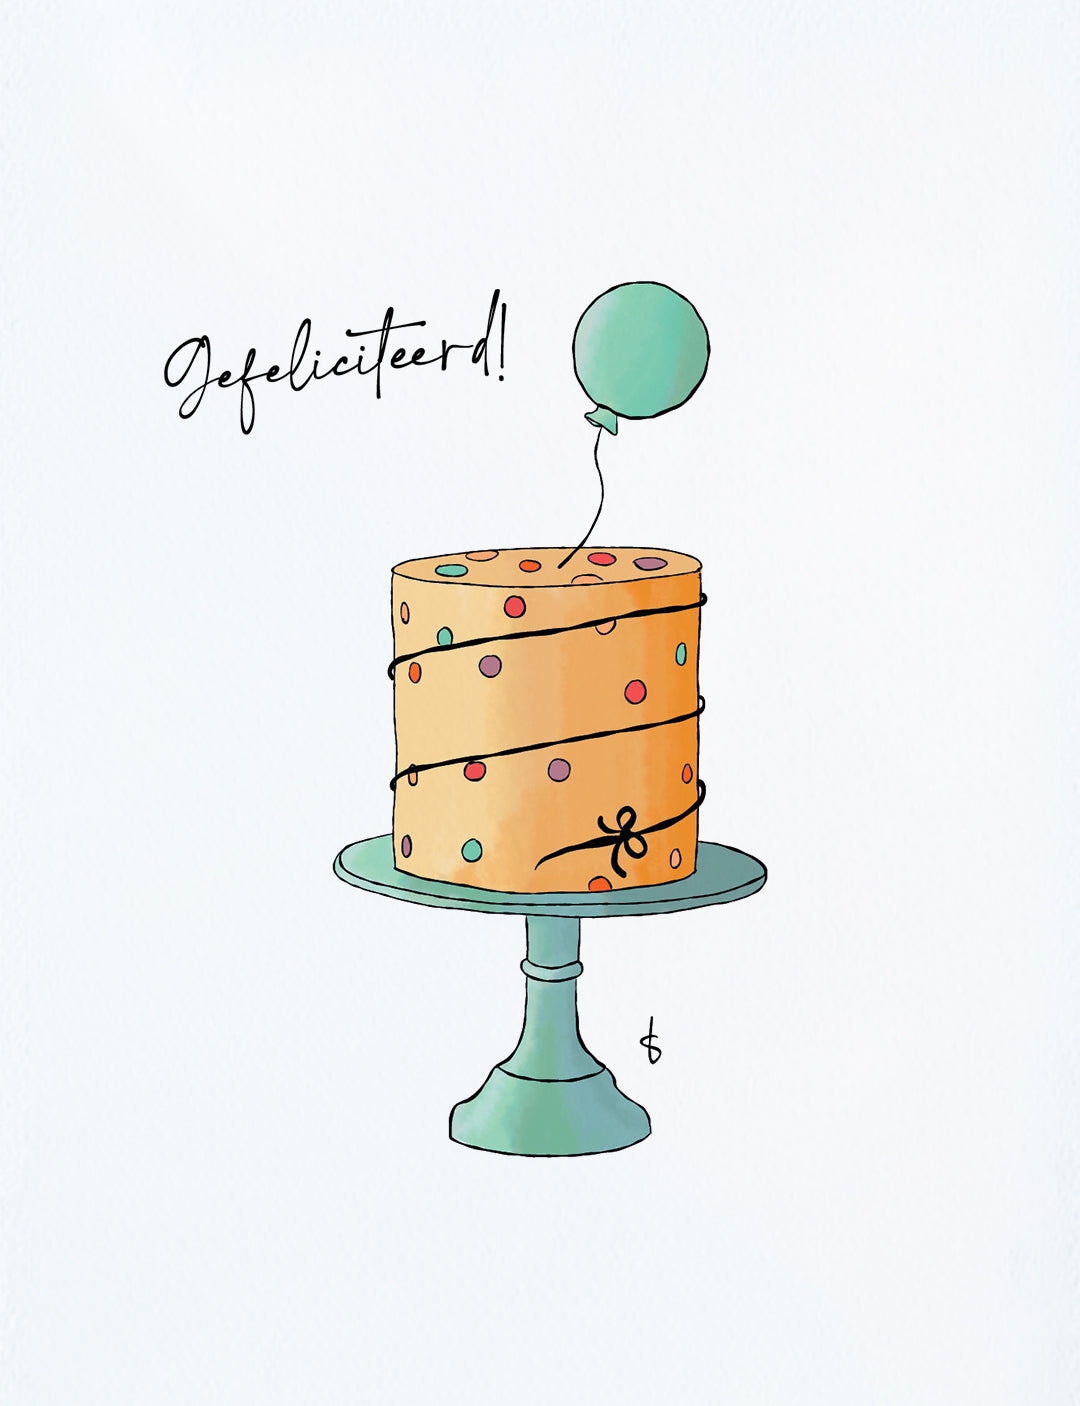 Deze felicitatiekaart op A6 formaat heeft een handgetekende illustratie van een vrolijke taart met ballon en de tekst: Gefeliciteerd! Bekijk onze webshop voor nog meer hippe kaartjes en originele kaarten.